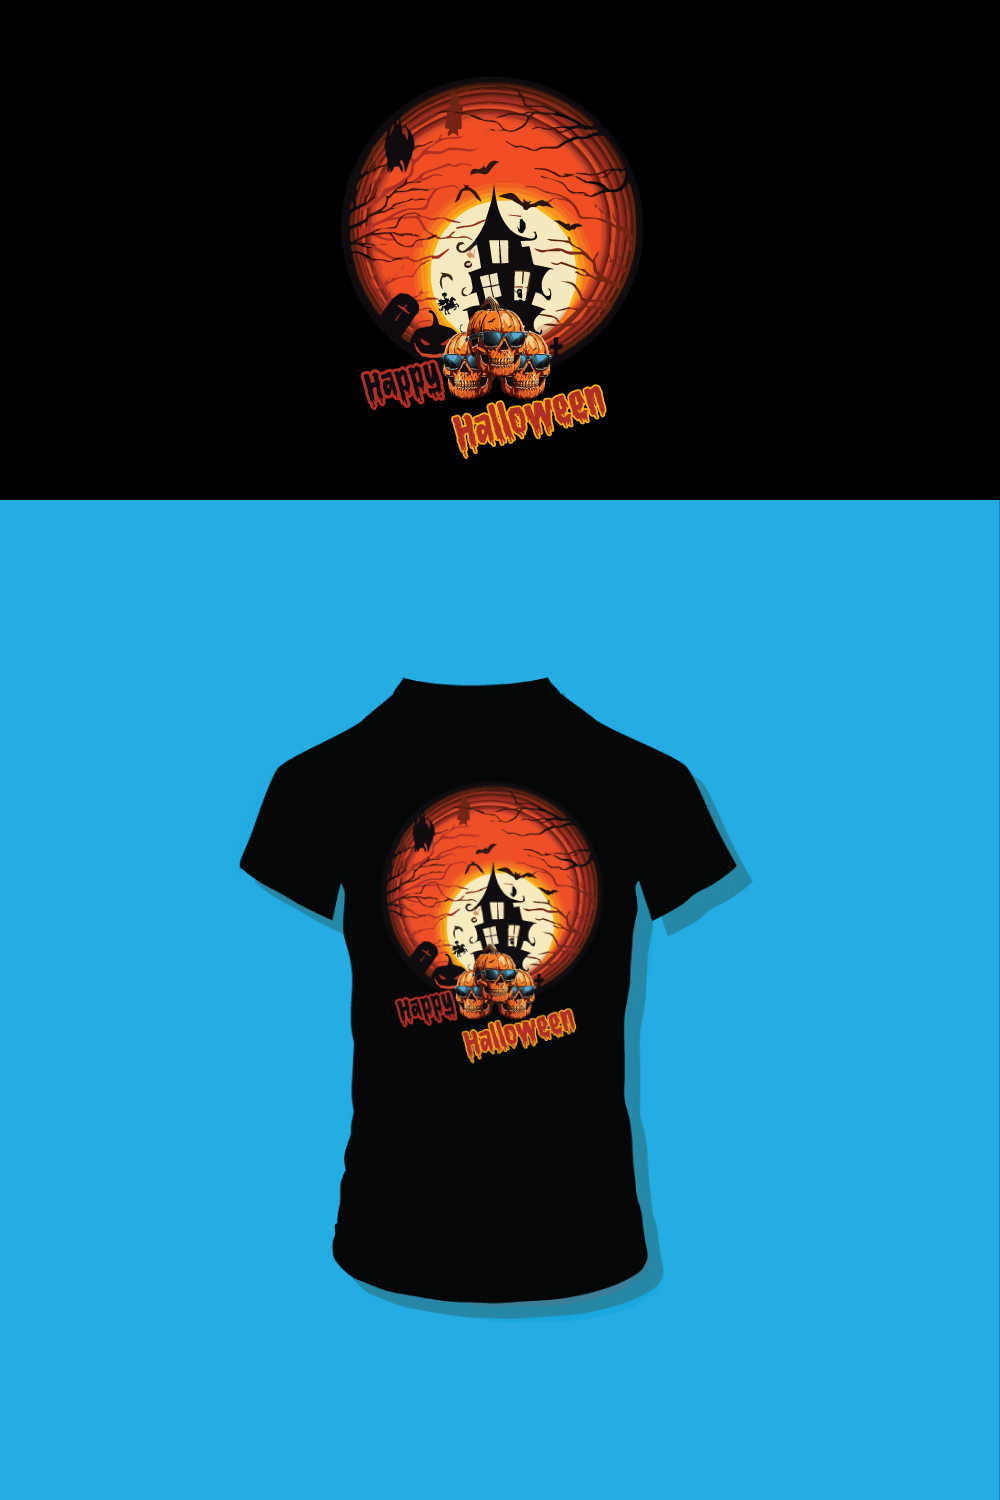 Halloween T shirt Design - t shirt for halloween pinterest preview image.